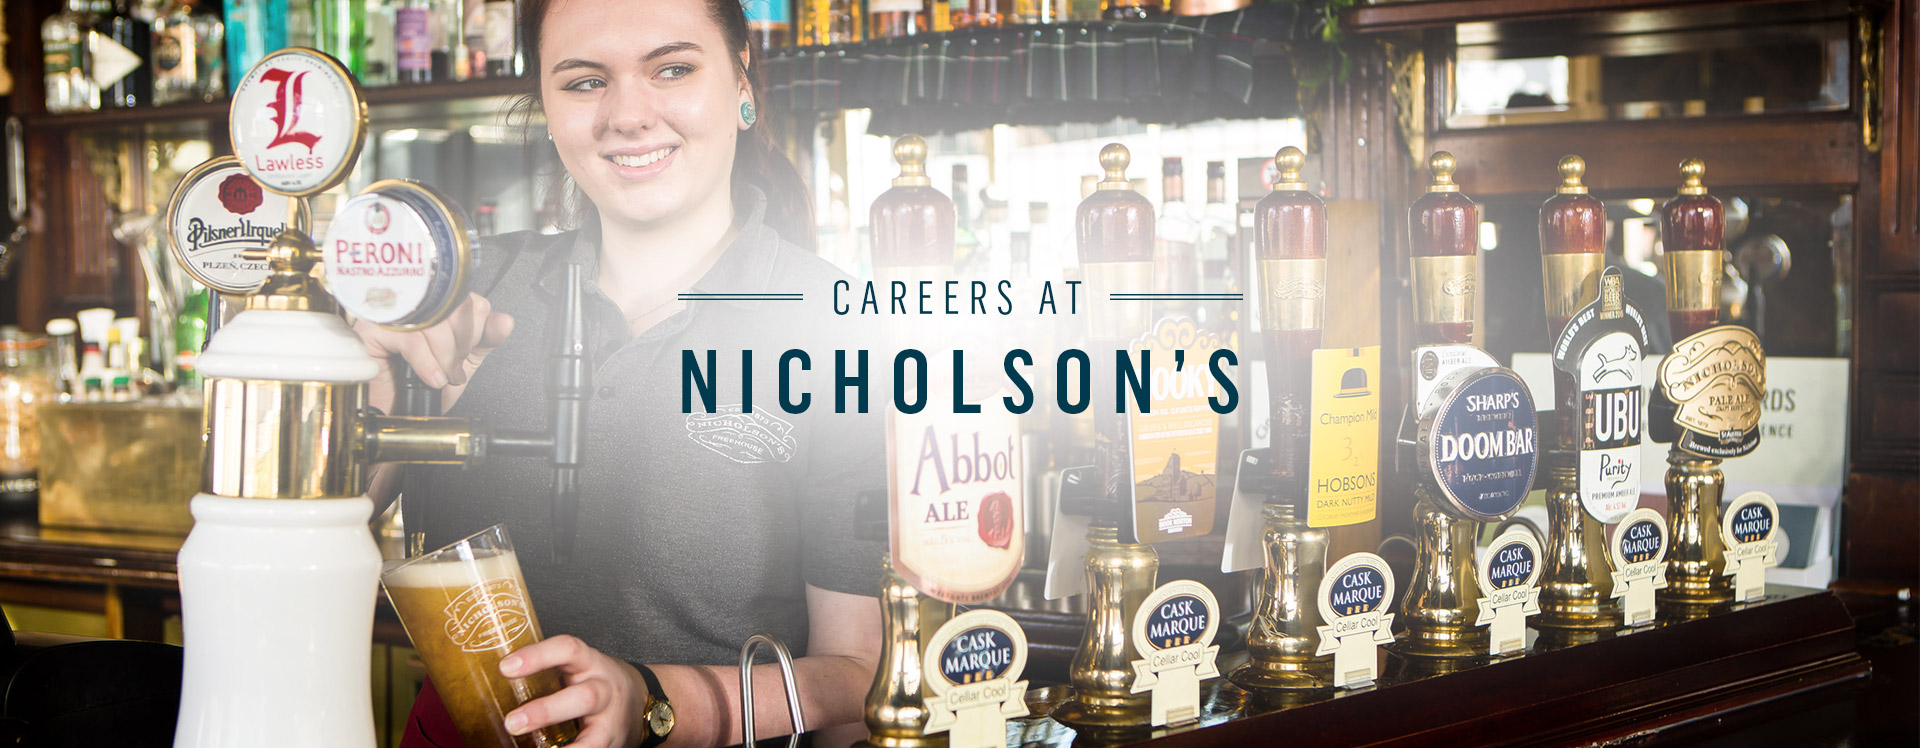 Jobs at Nicholson's